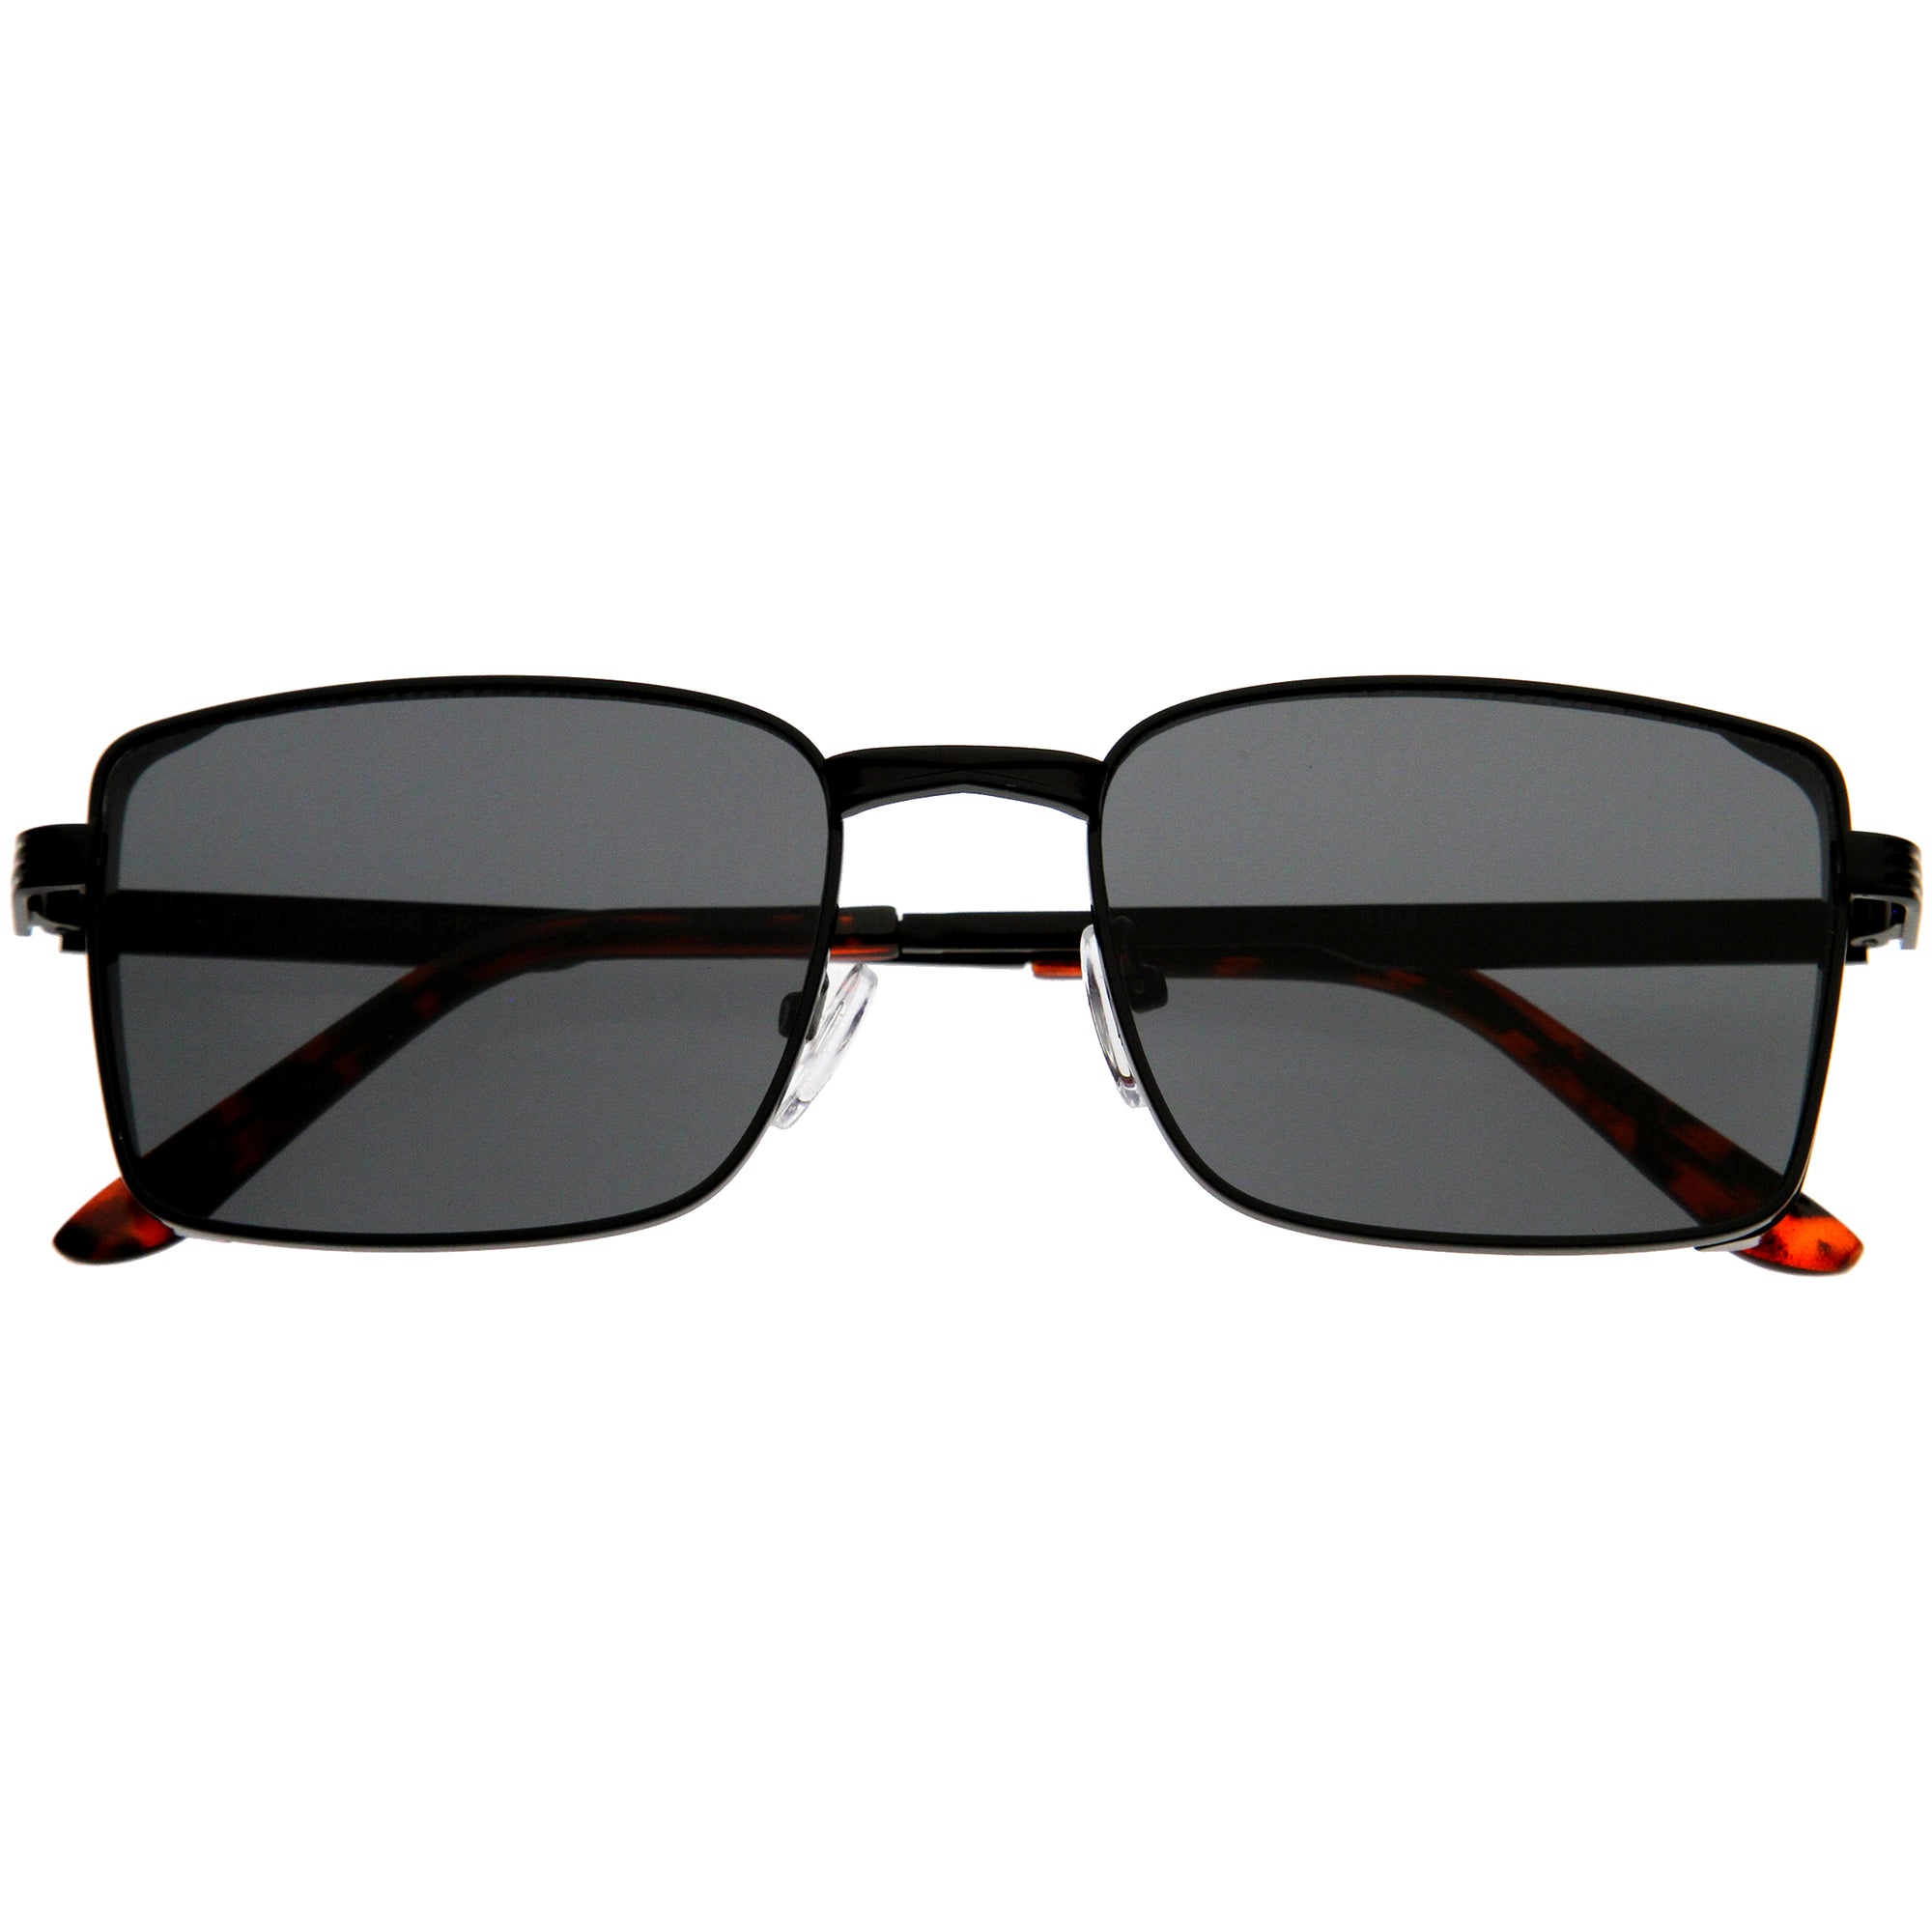 Square metal sunglasses